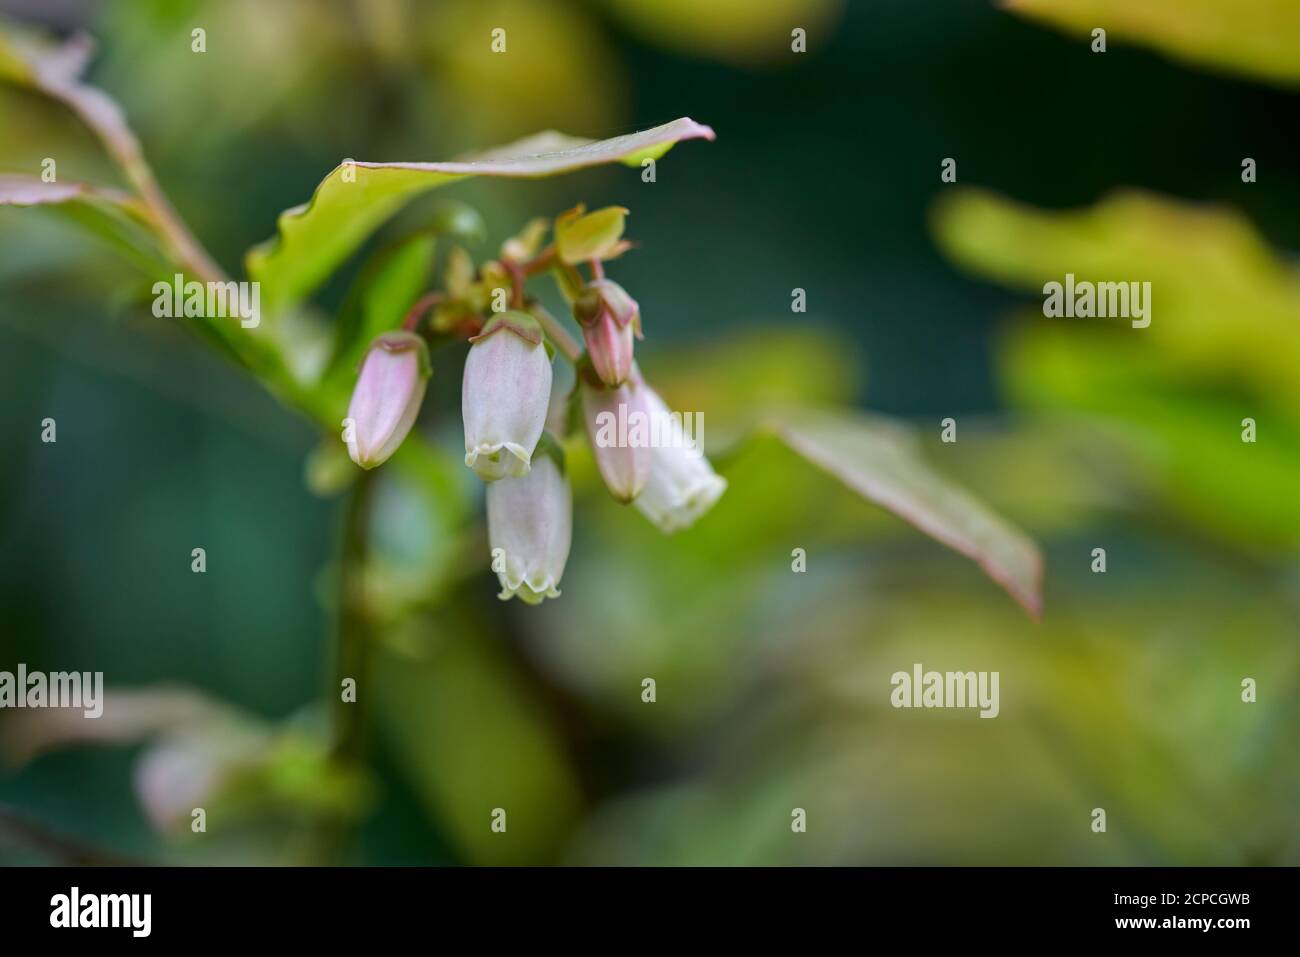 Gruppo di piccoli fiori bianchi cremosi a forma di campana che sbocciano su un cespuglio di mirtilli nel giardino in primavera in Scozia, Regno Unito Foto Stock